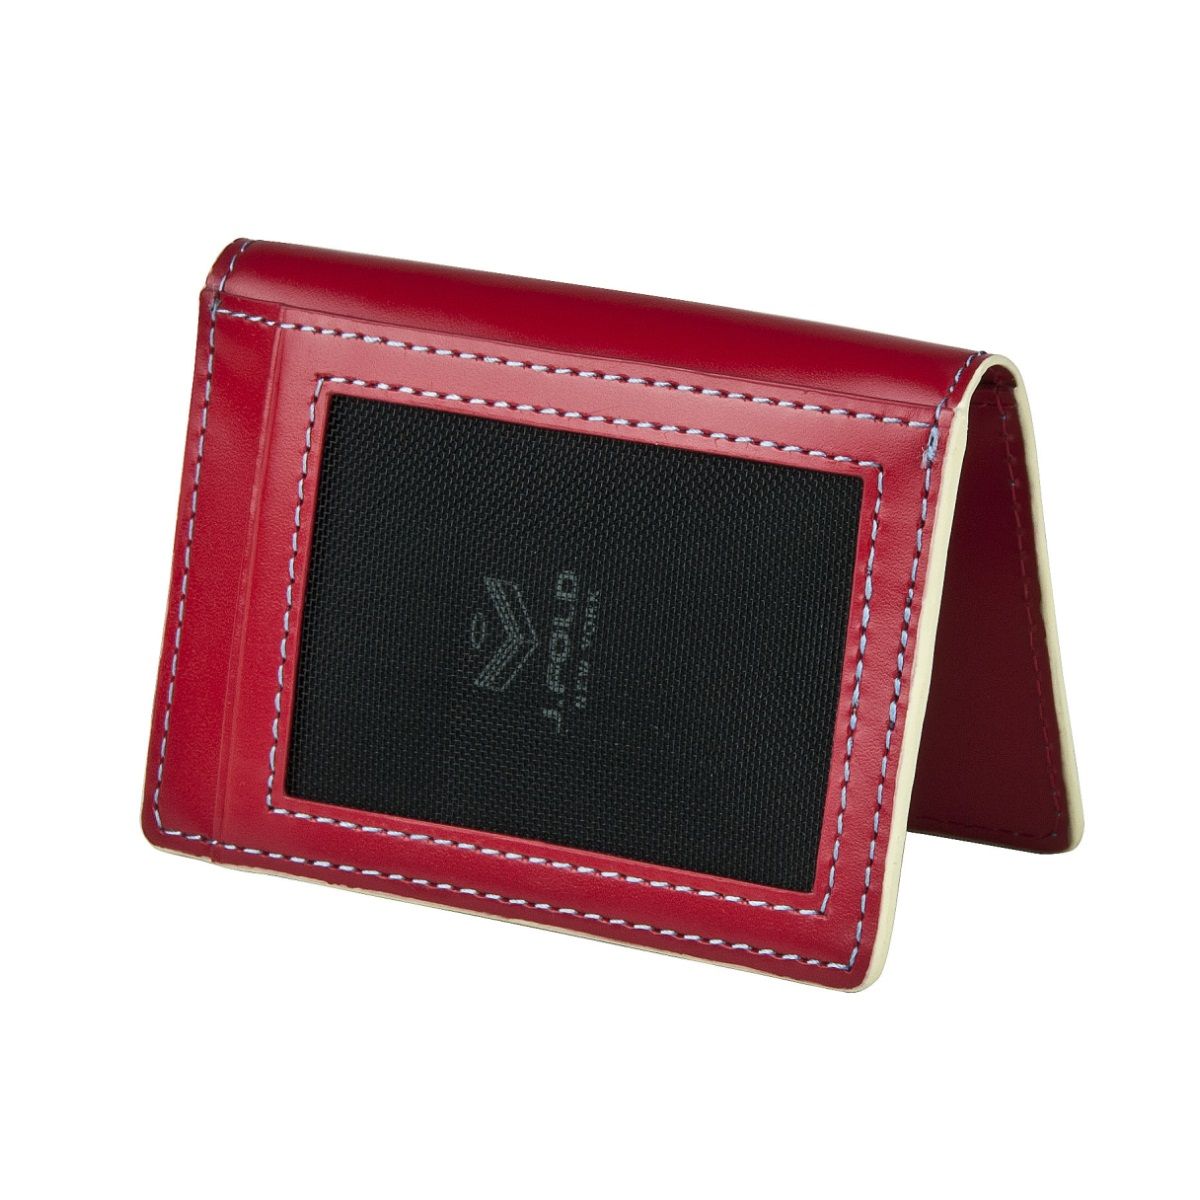 folding card wallet